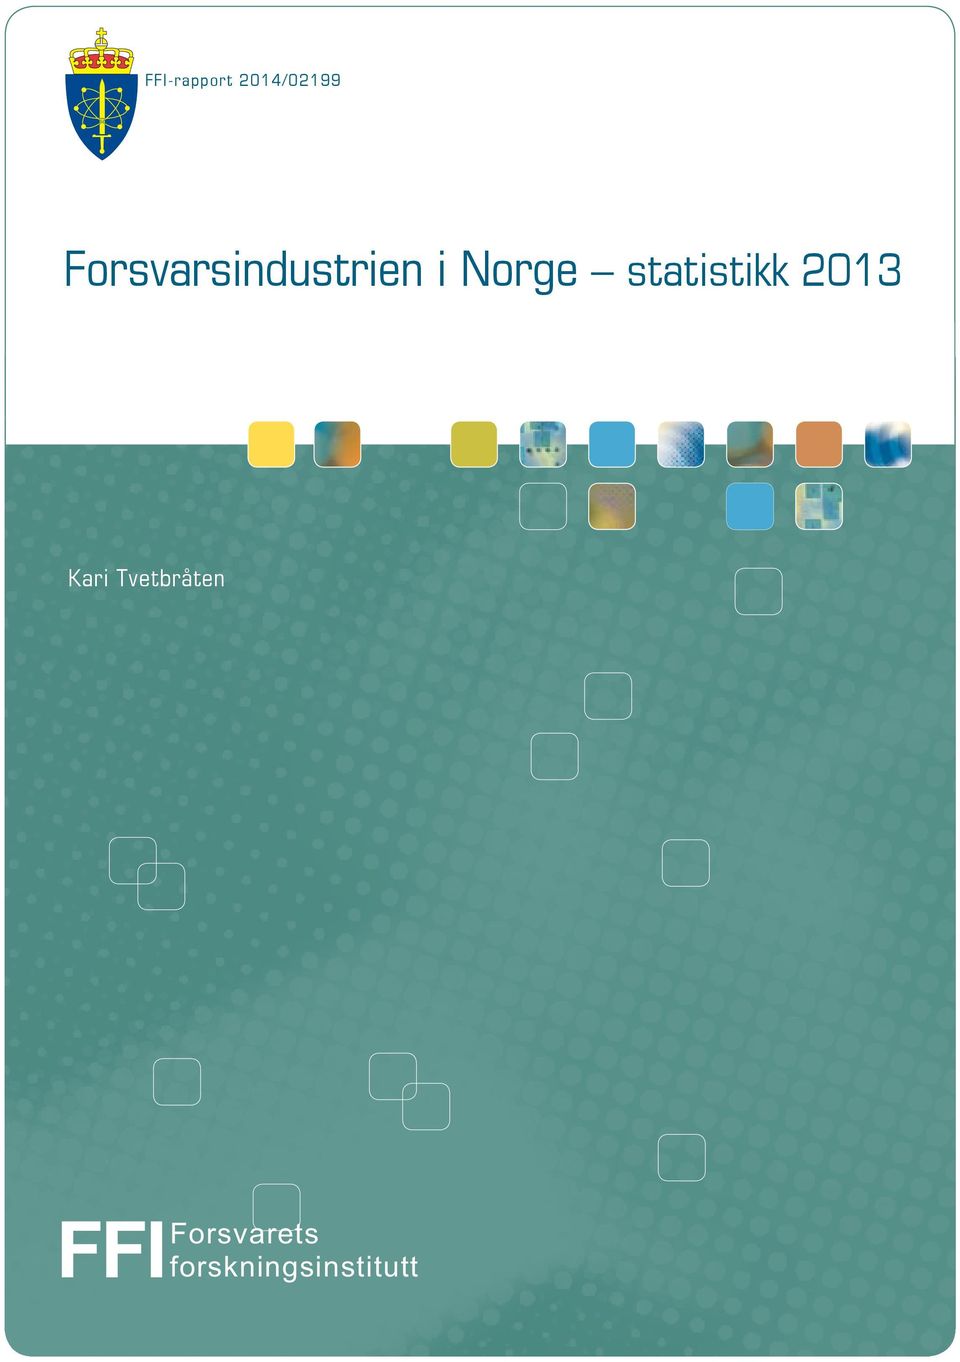 2013 Kari Tvetbråten Forsvarets FFI